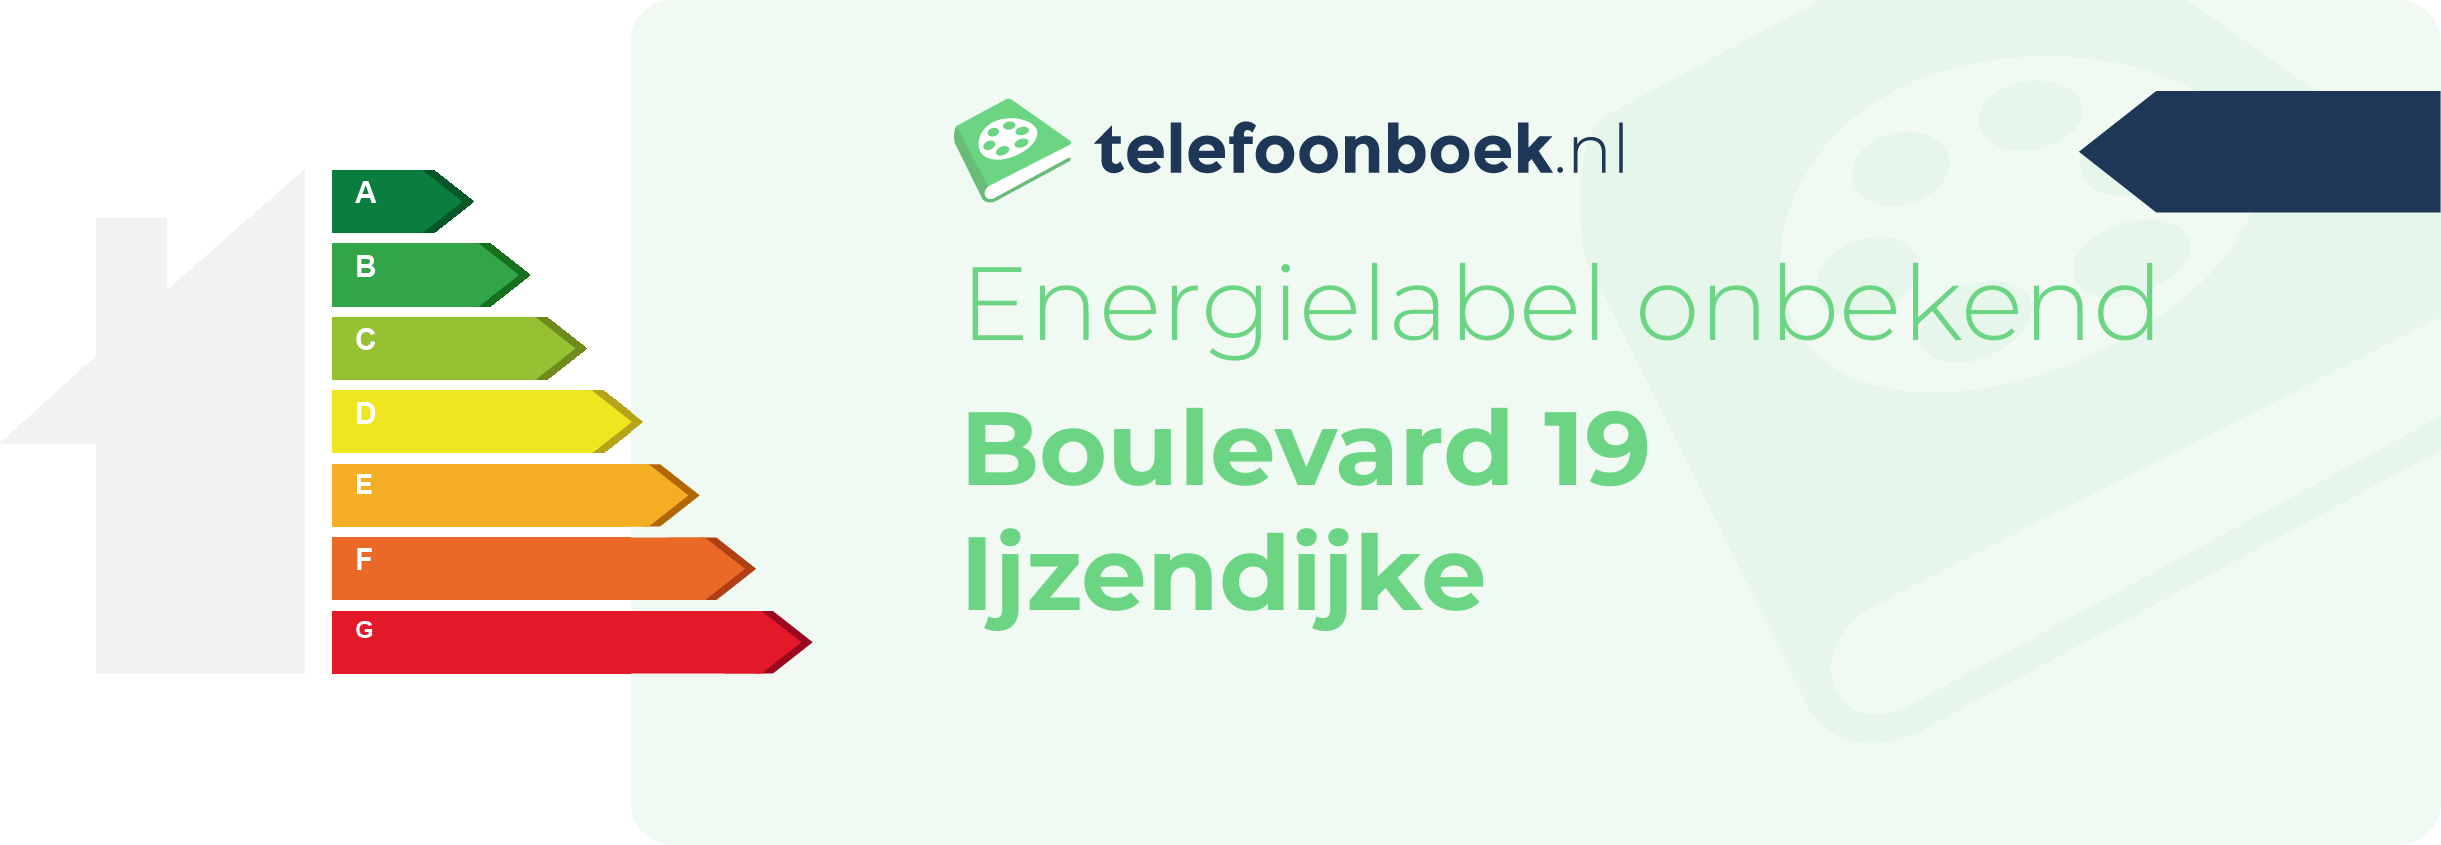 Energielabel Boulevard 19 Ijzendijke